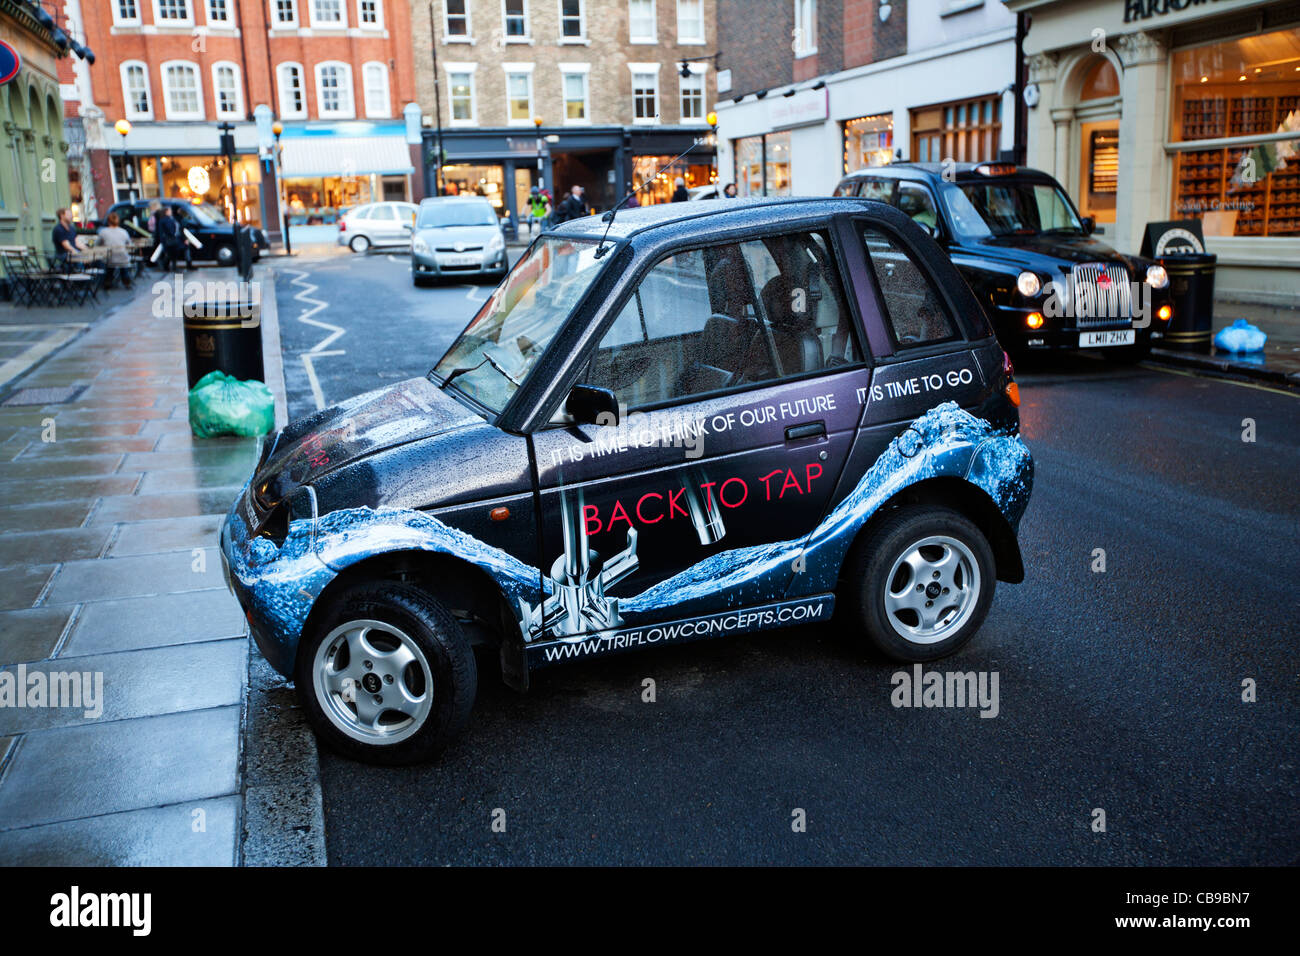 Electric voiture garée à 90 degrés. Paddington Street, Marylebone ; Londres ; Angleterre ; Royaume-Uni ; Europe Banque D'Images